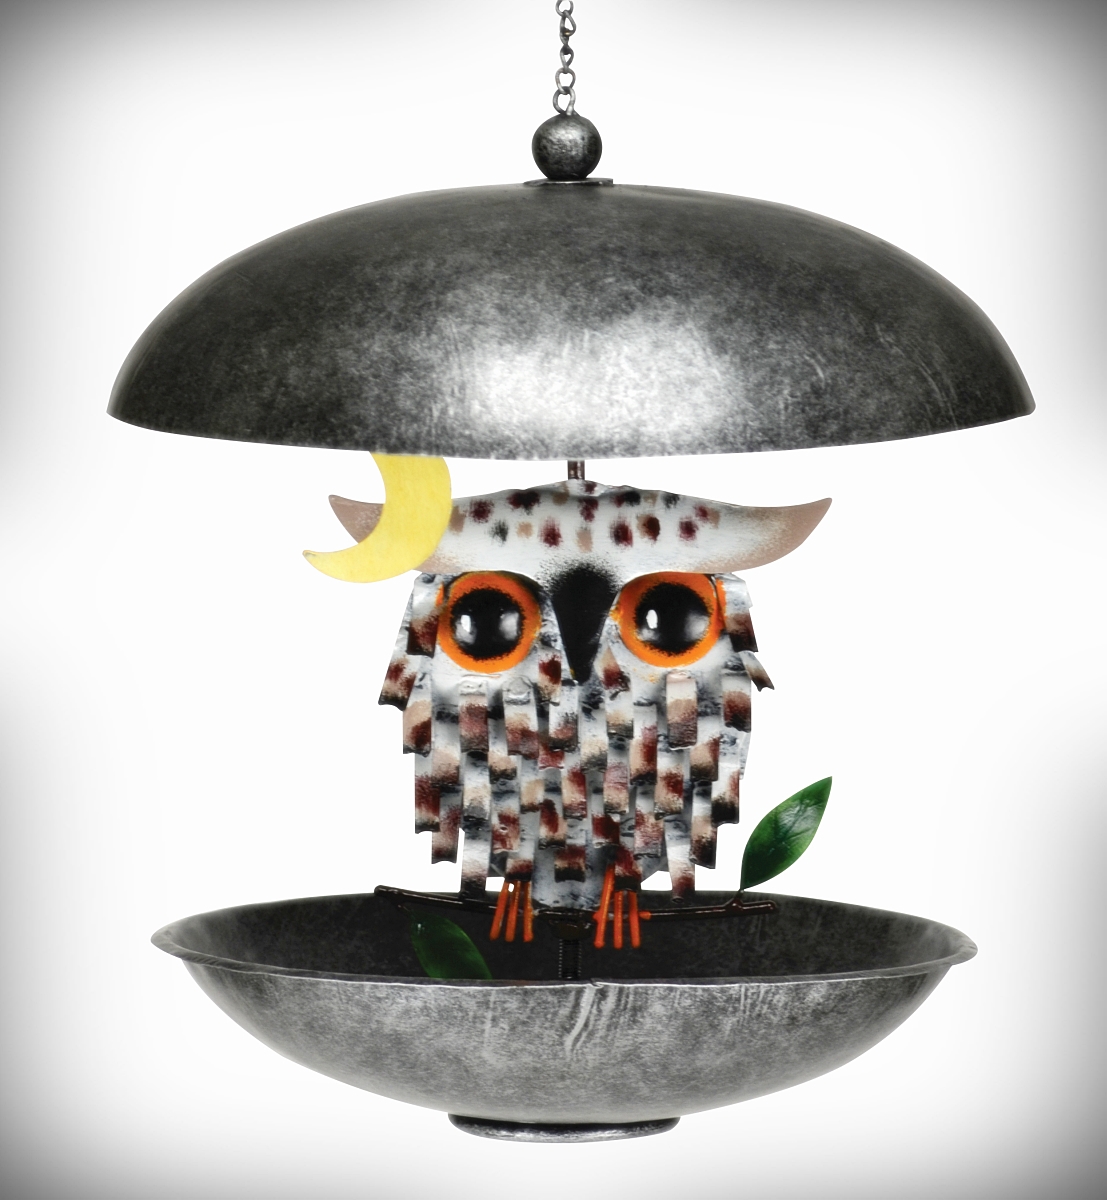 Snowy Spiky Owl Bistro Feeder